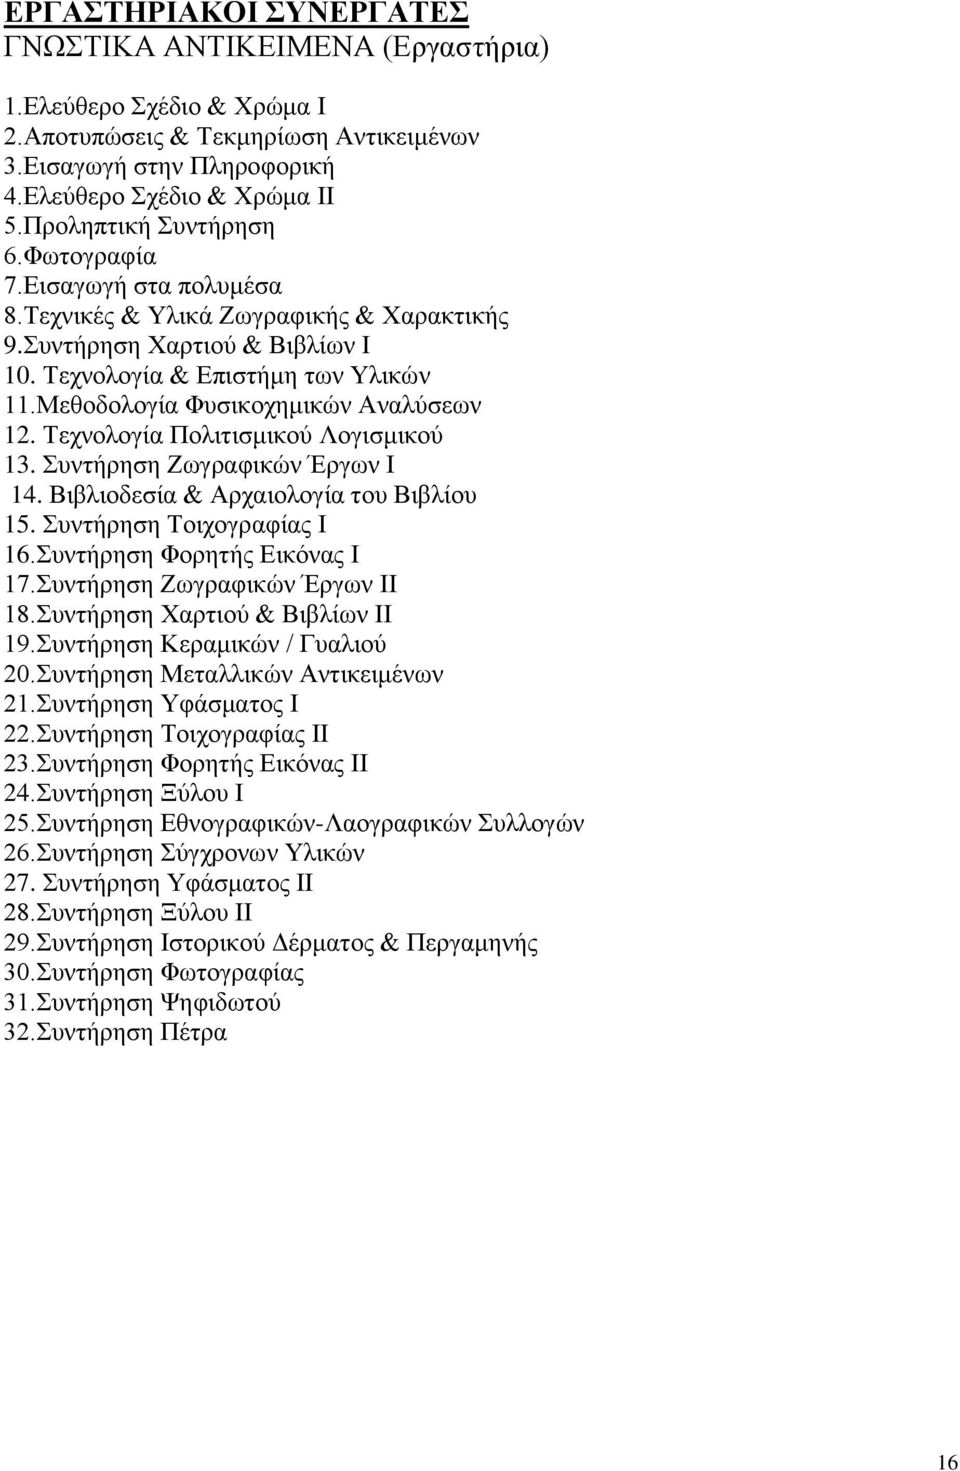 Μεθοδολογία Φυσικοχημικών Αναλύσεων 12. Τεχνολογία Πολιτισμικού Λογισμικού 13. Συντήρηση Ζωγραφικών Έργων Ι 14. Βιβλιοδεσία & Αρχαιολογία του Βιβλίου 15. Συντήρηση Τοιχογραφίας Ι 16.